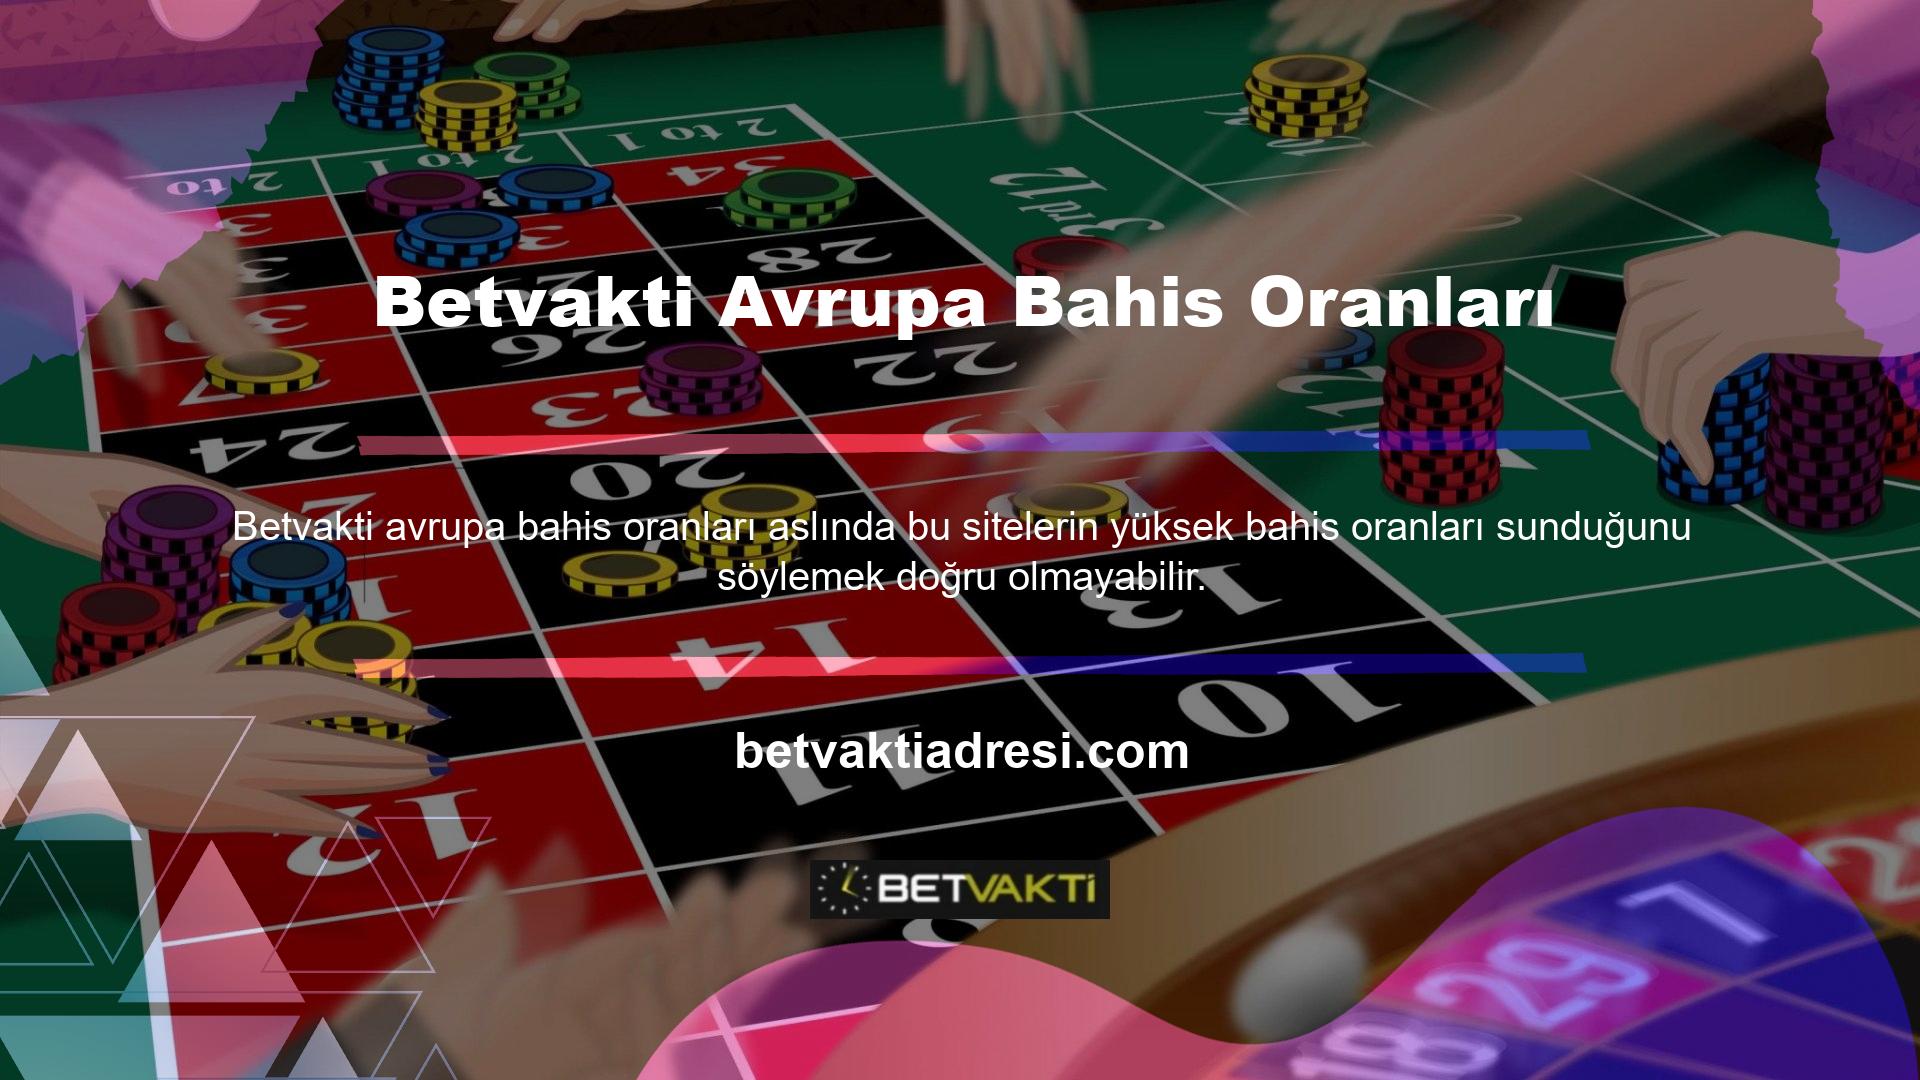 Betvakti web sitesi Avrupa pazarına uygun gümrük tarifelerini hesaplamaktadır